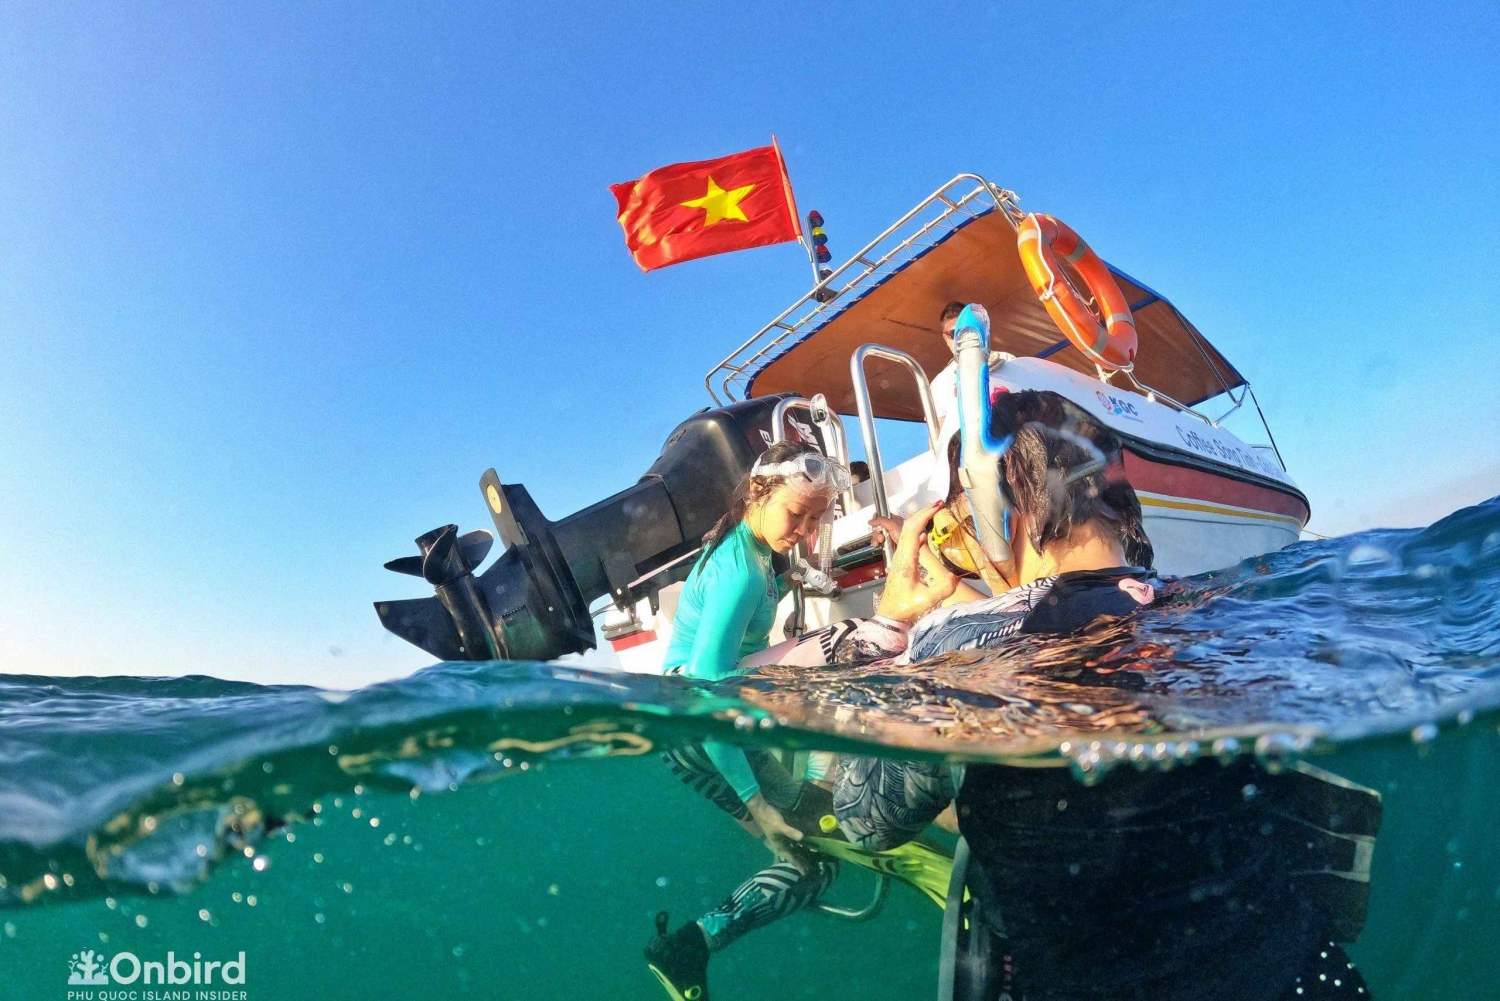 Phu Quoc : Plongée avec masque et tuba sur 3 récifs coralliens et plage (MAX 12)